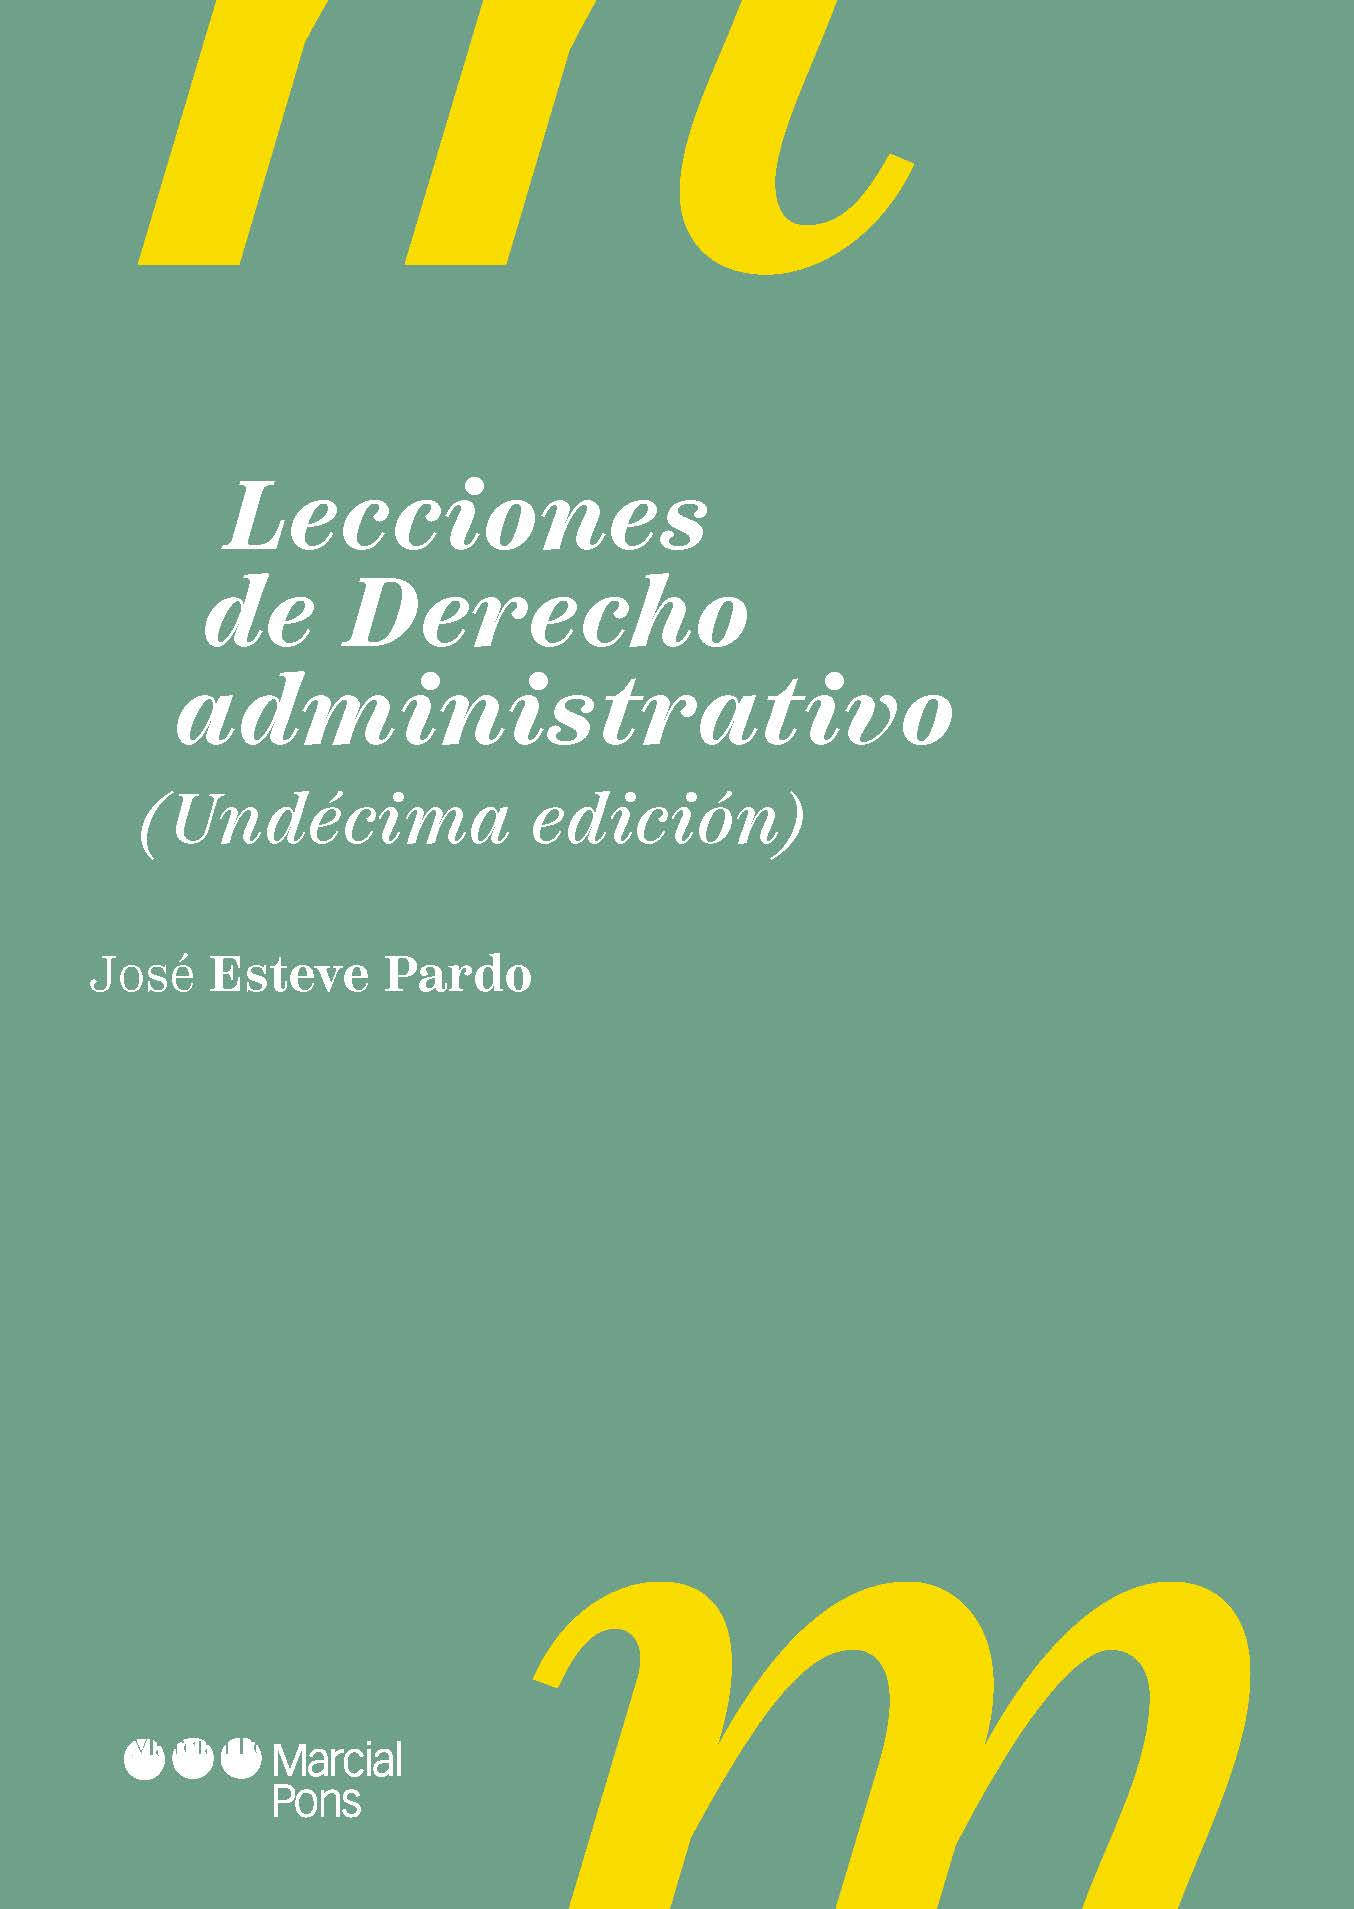 Lecciones de Derecho administrativo